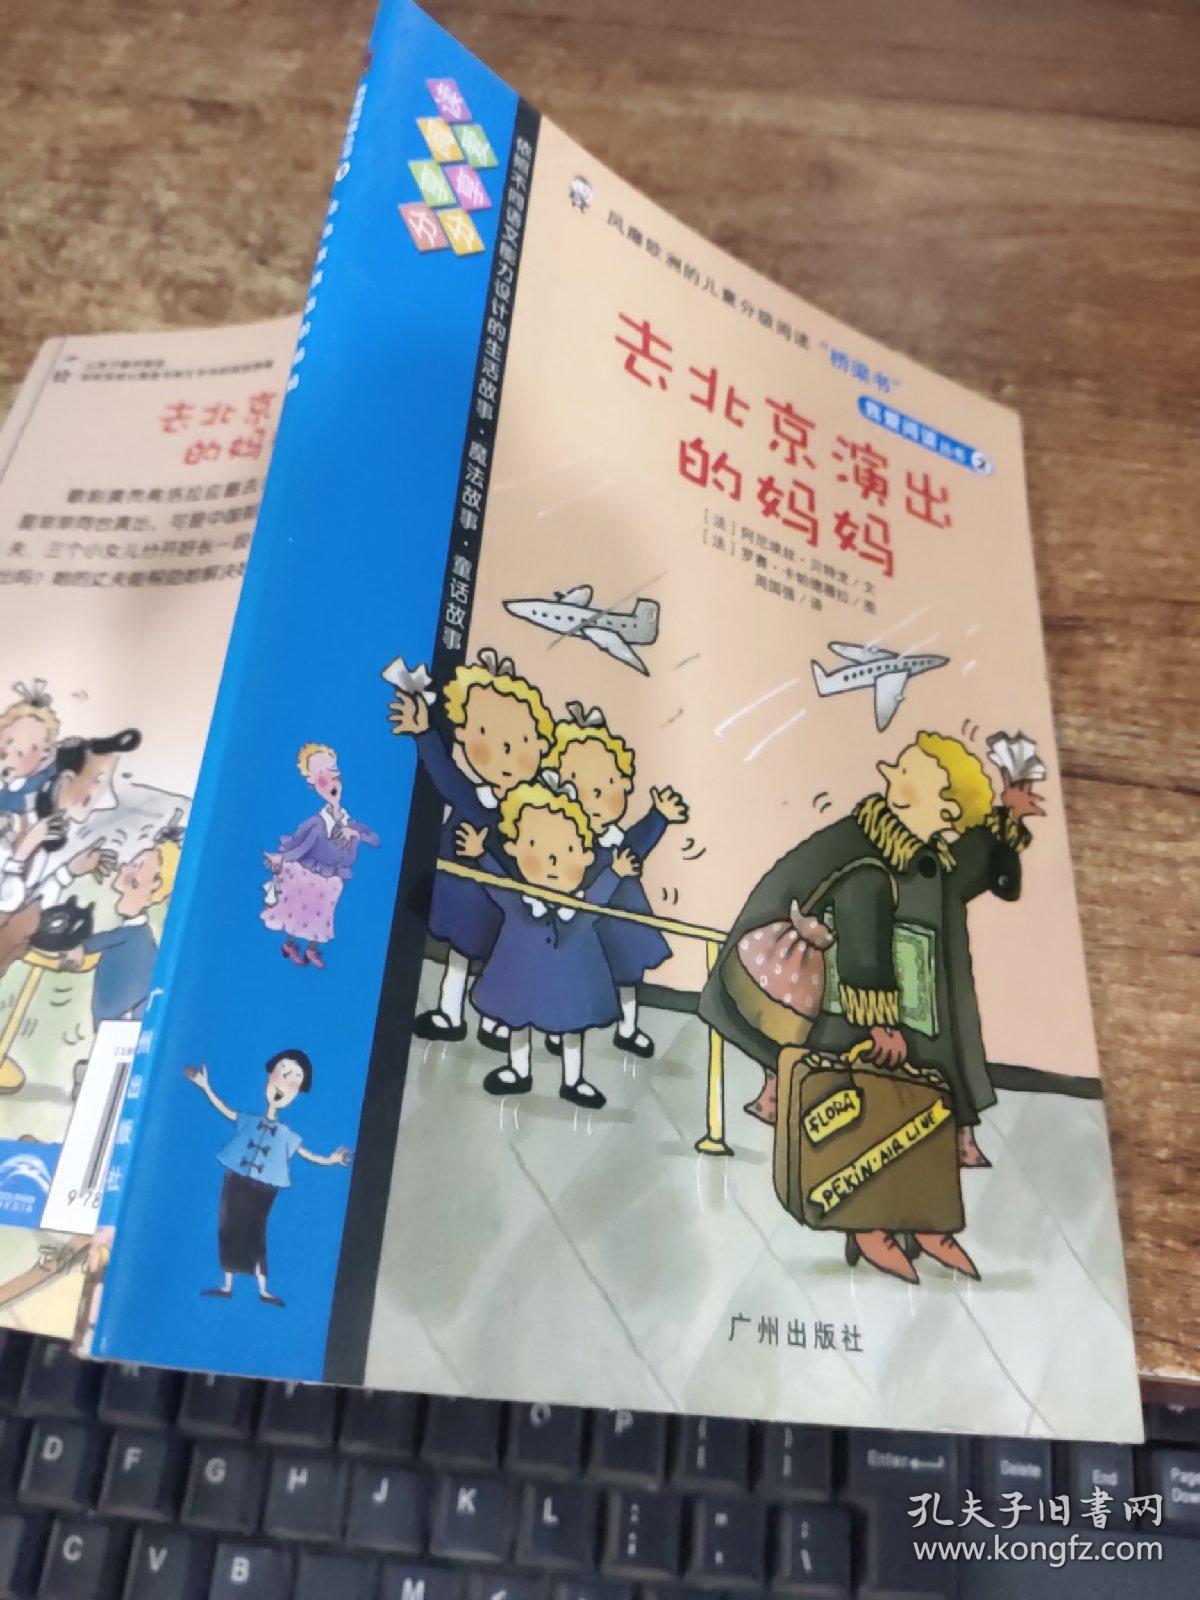 我爱阅读丛书 2  去北京演出的妈妈   有黄斑